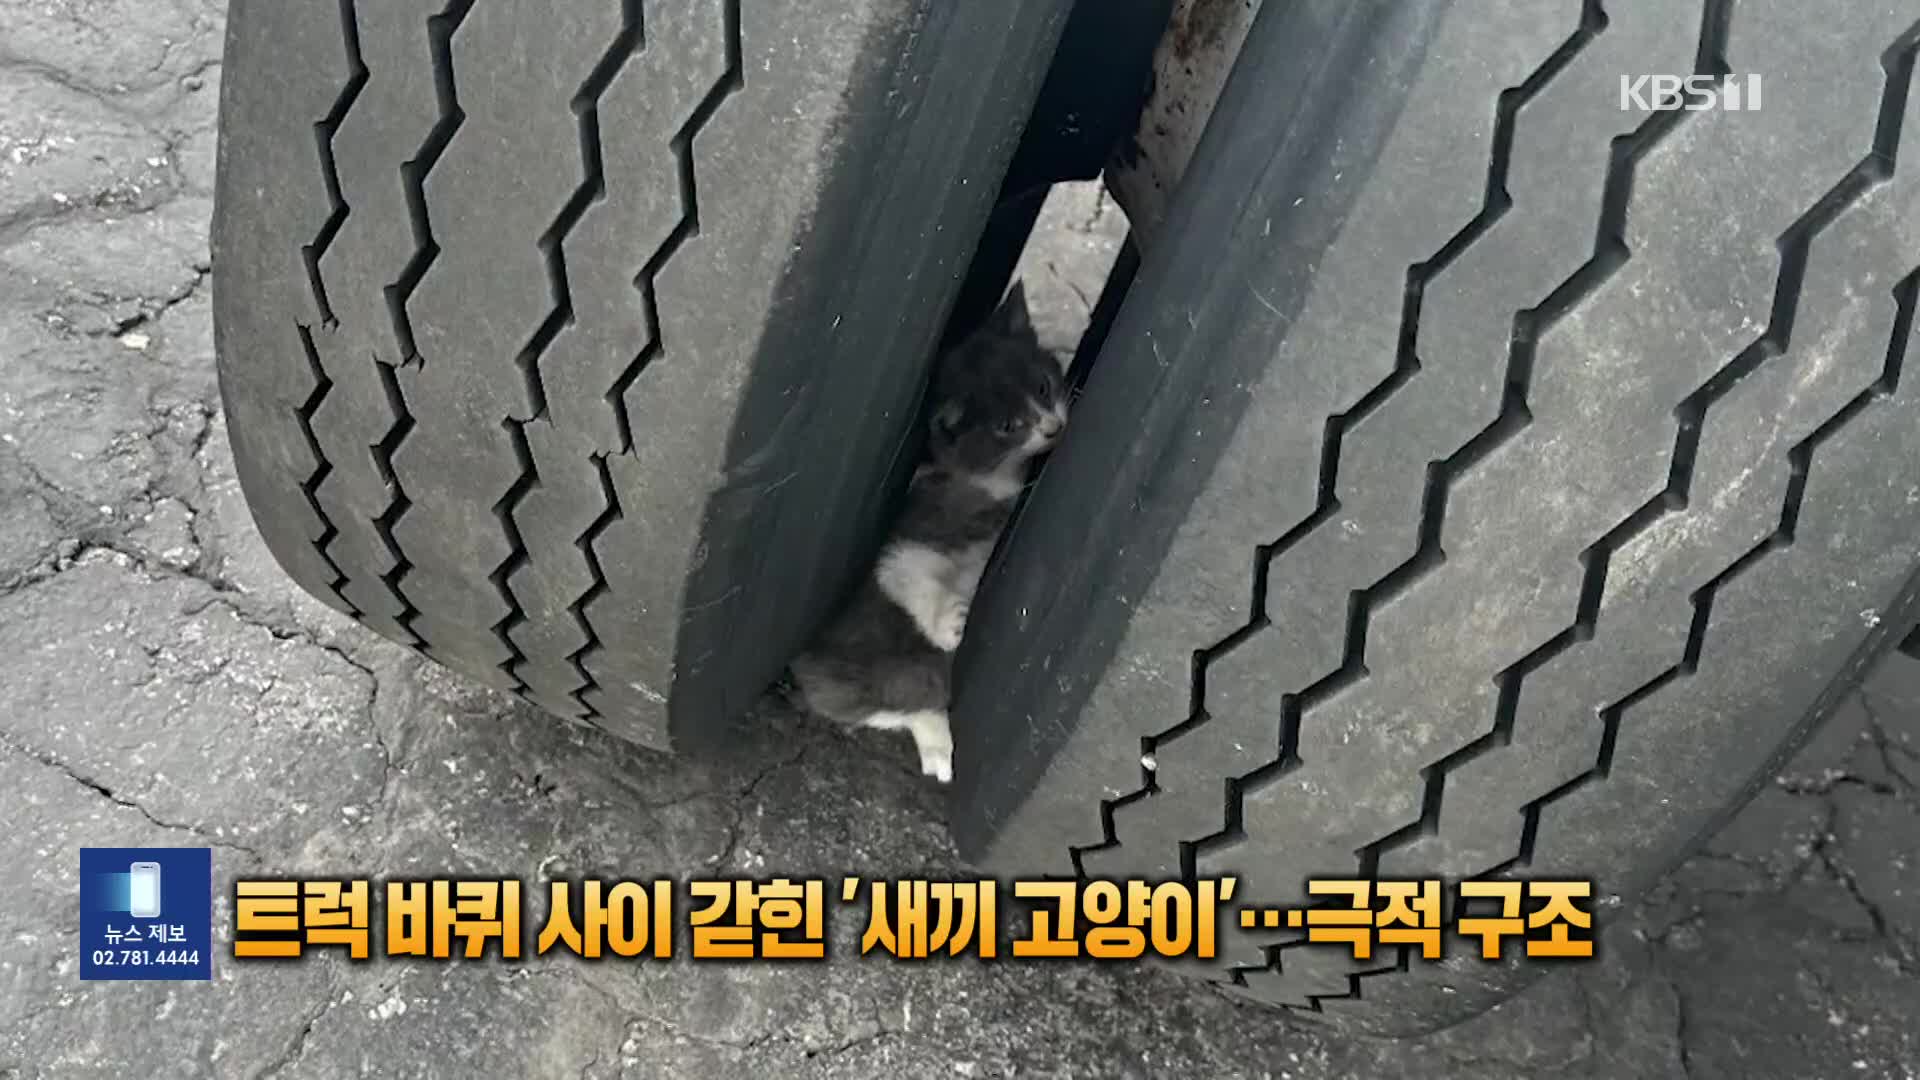 [잇슈 SNS] 트럭 바퀴 사이에 갇힌 새끼 고양이 극적 구조